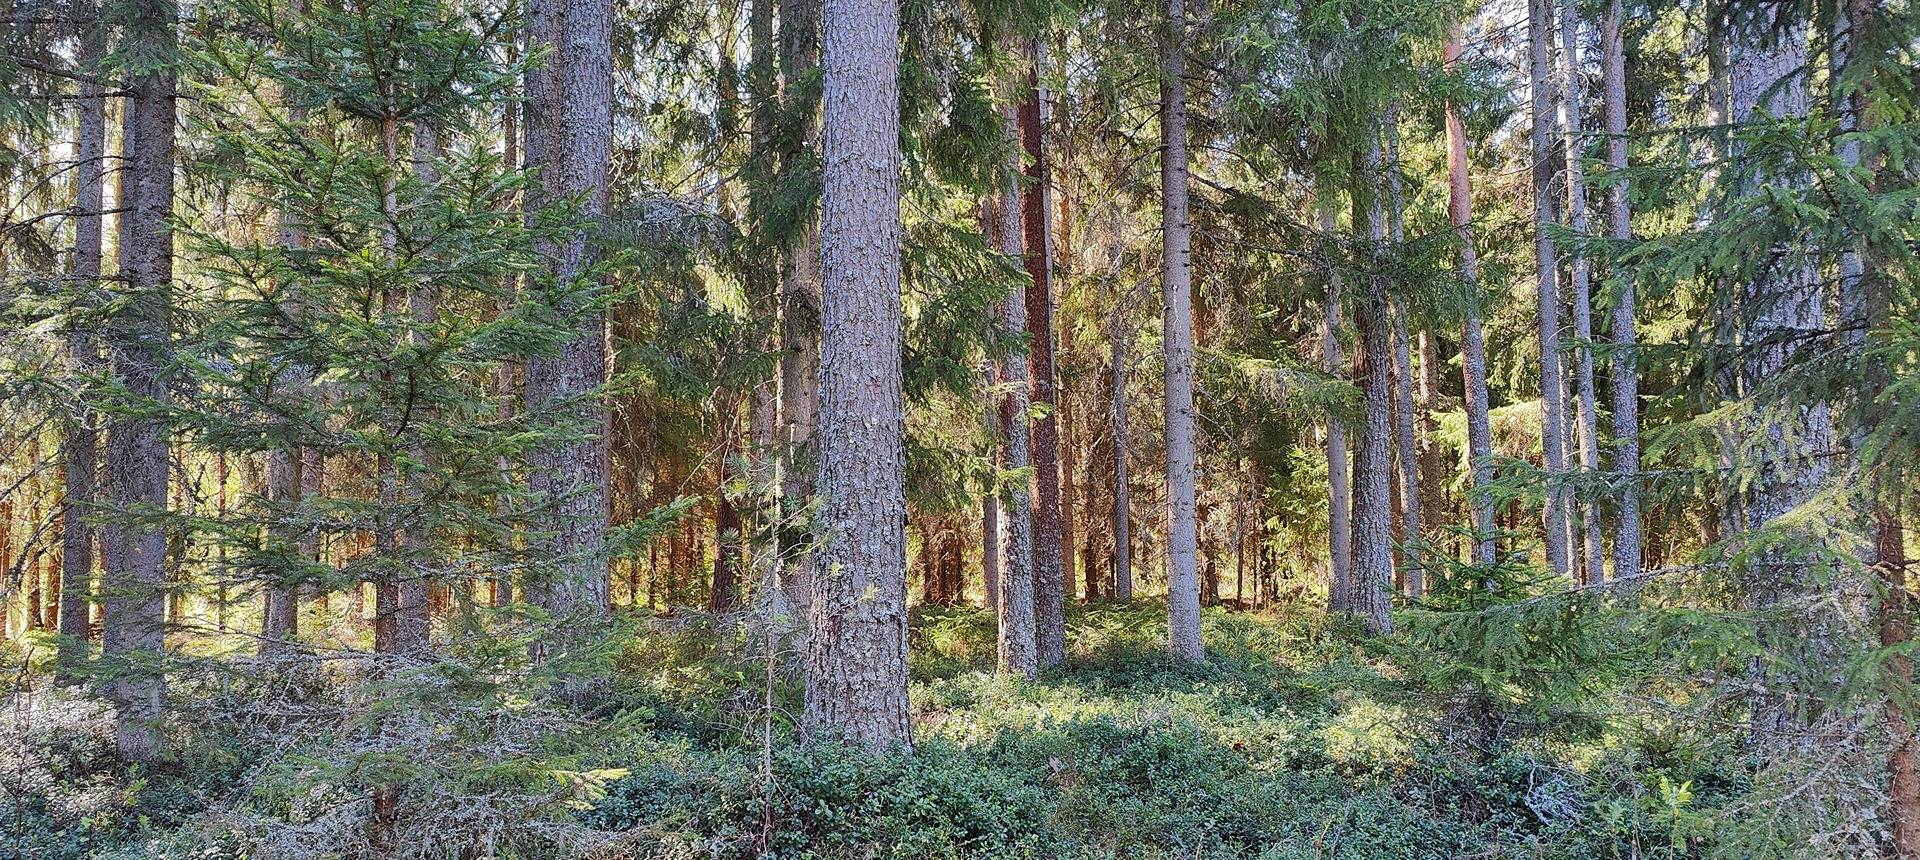 Määräala metsää Siikaisissa, Anttila 2